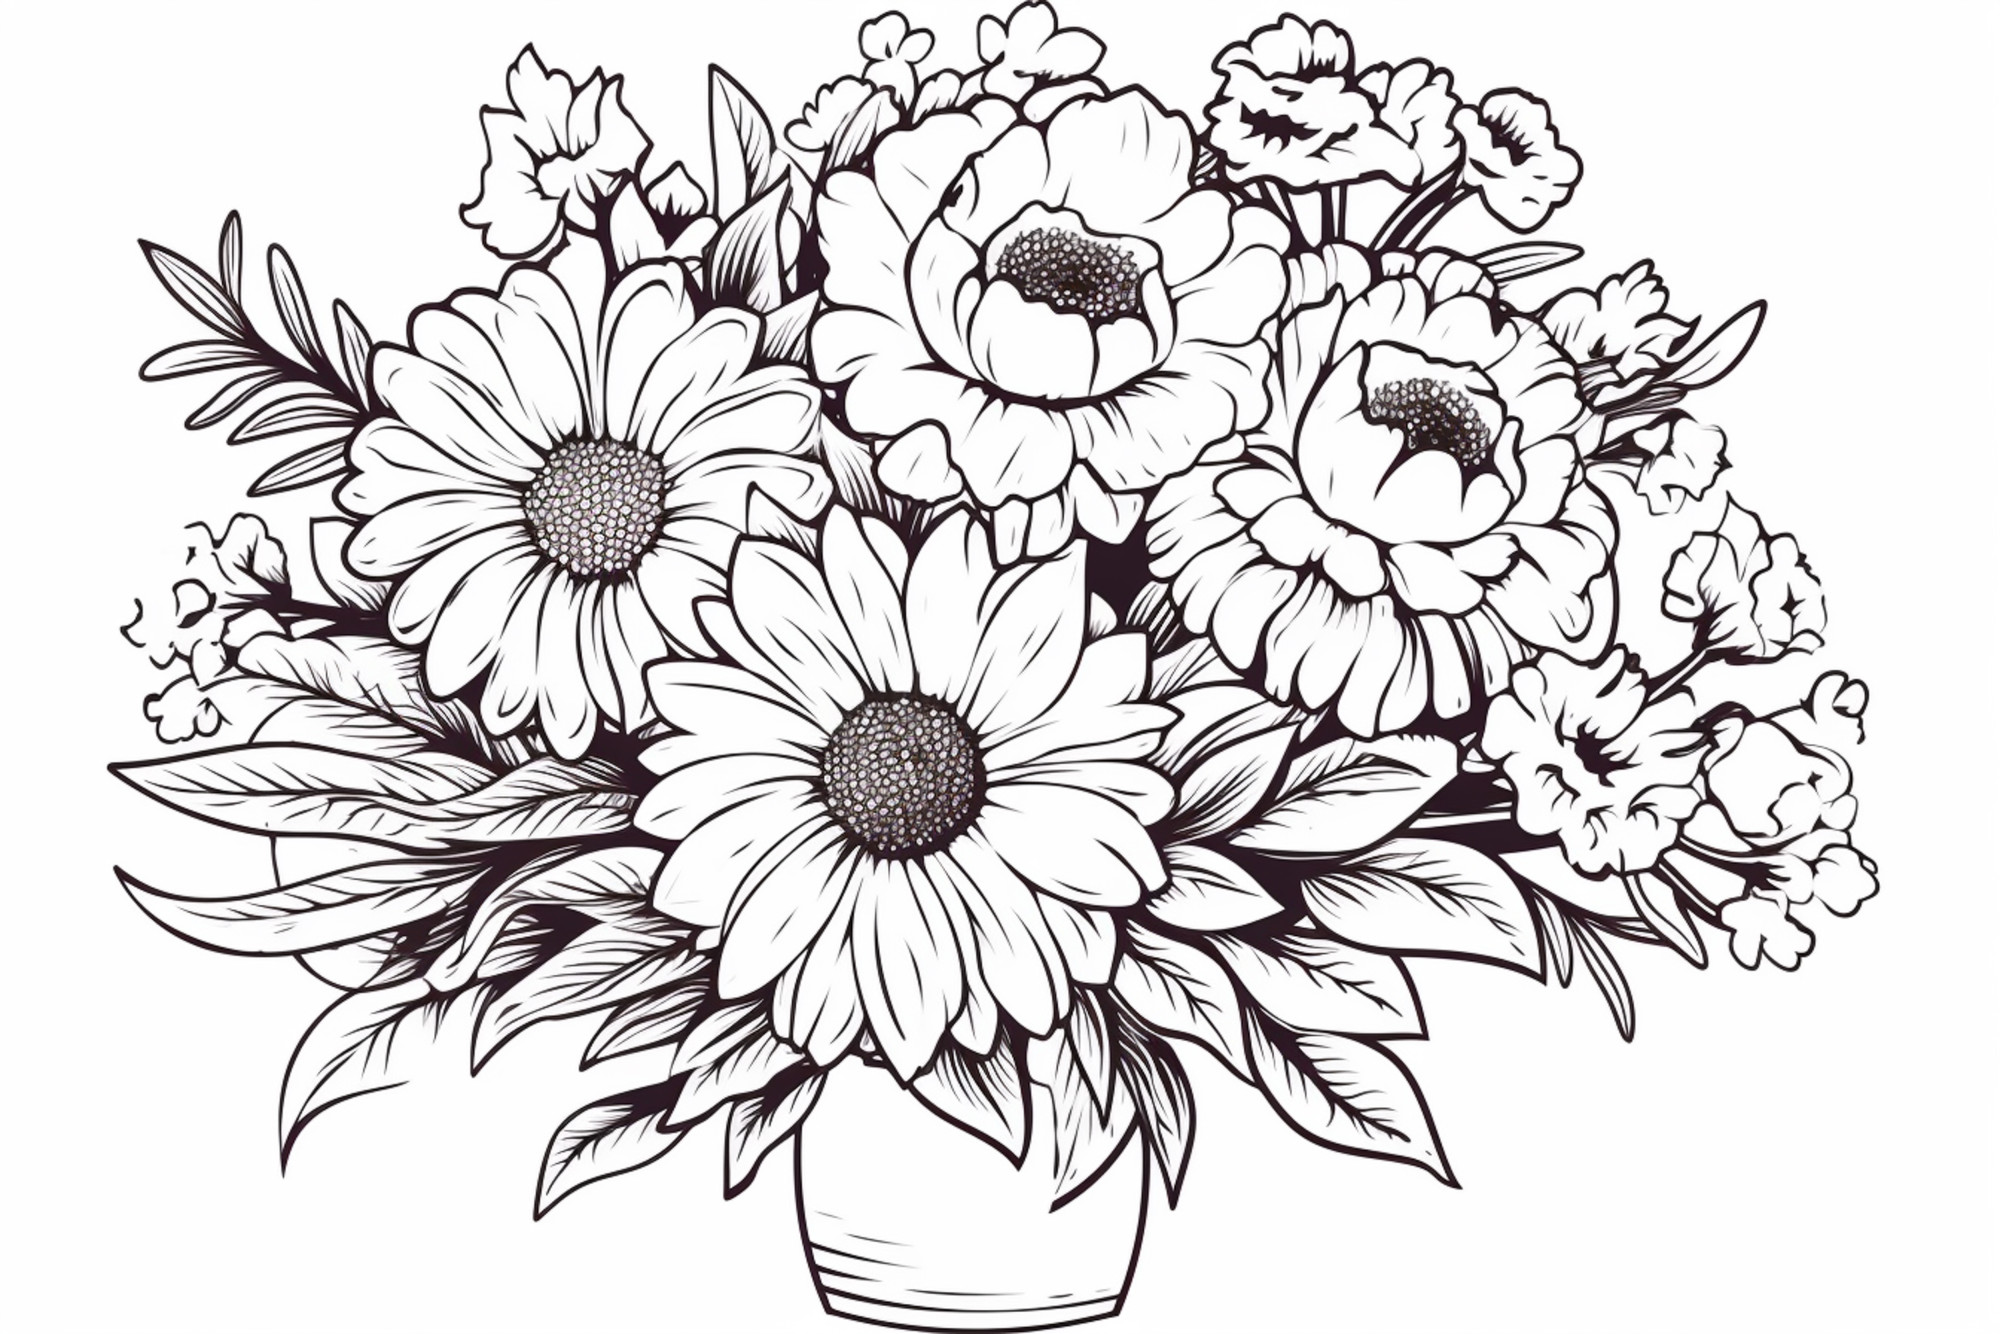 Раскраска для детей: букет цветов астра в вазе